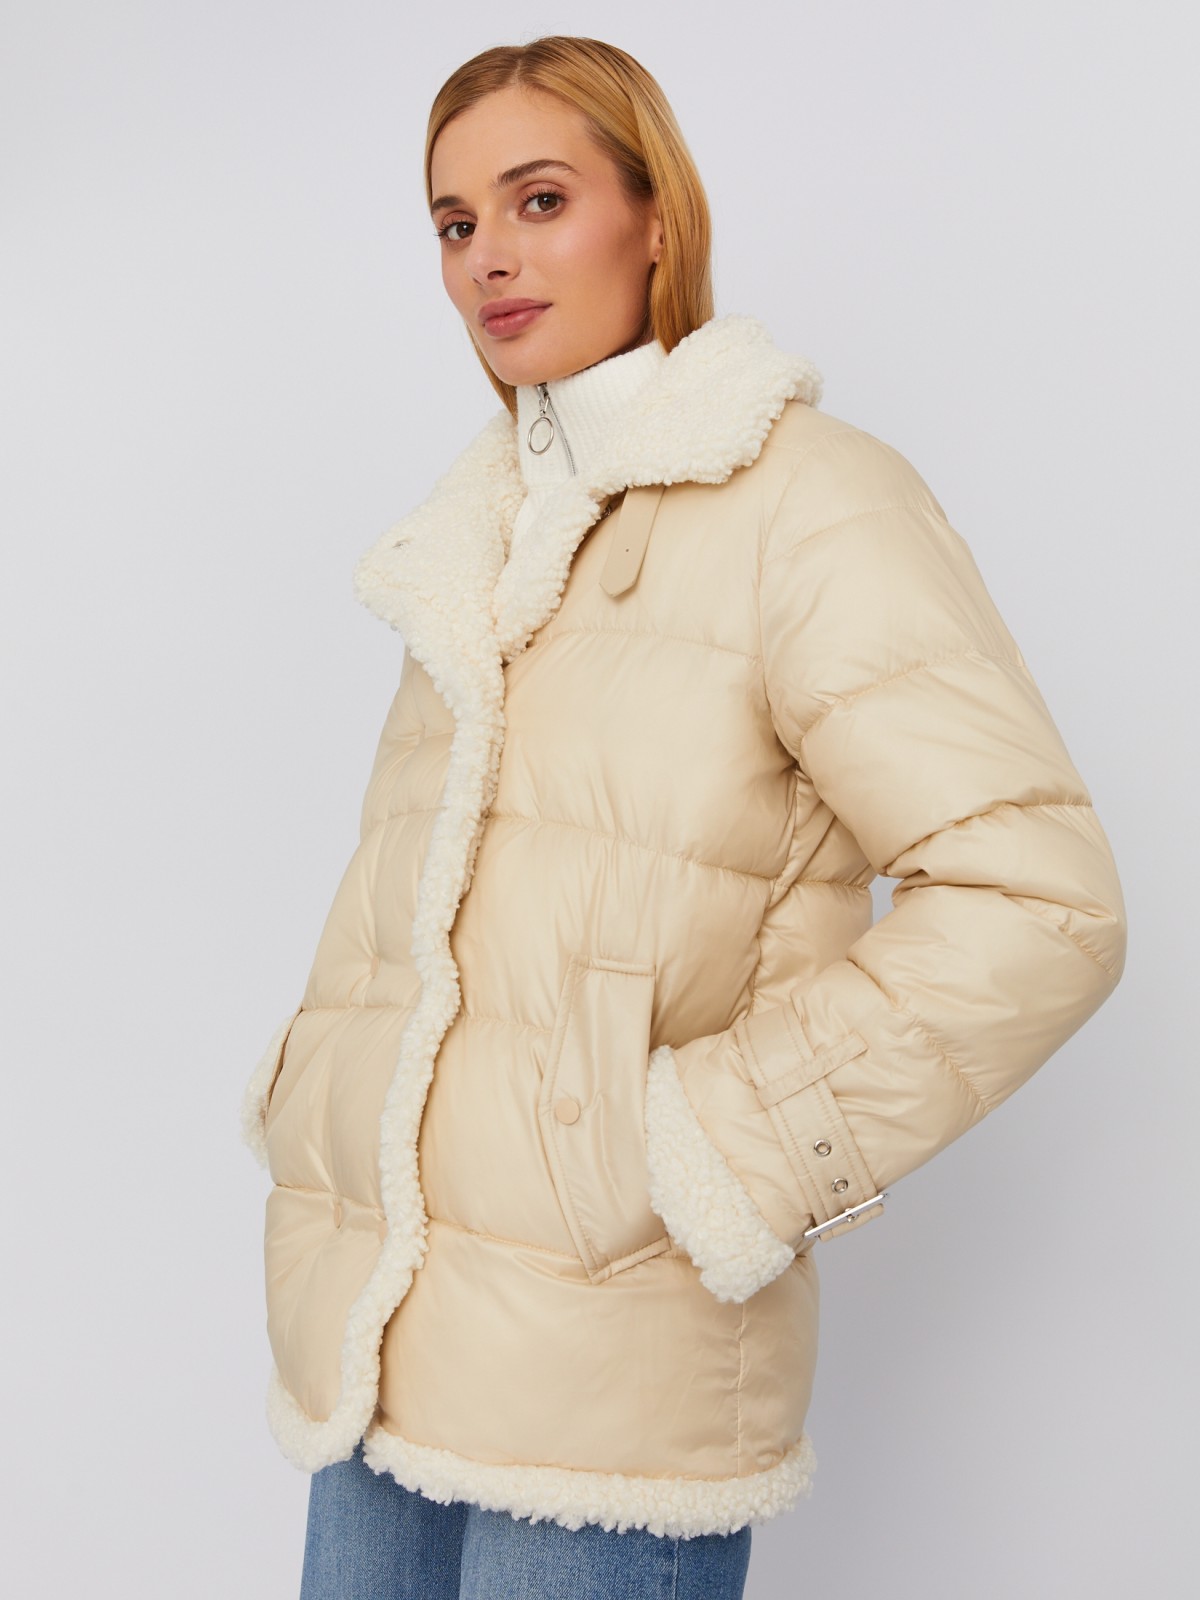 Утеплённая стёганая куртка с отложным воротником и отделкой из искусственного меха zolla 023335112354, цвет молоко, размер M - фото 3